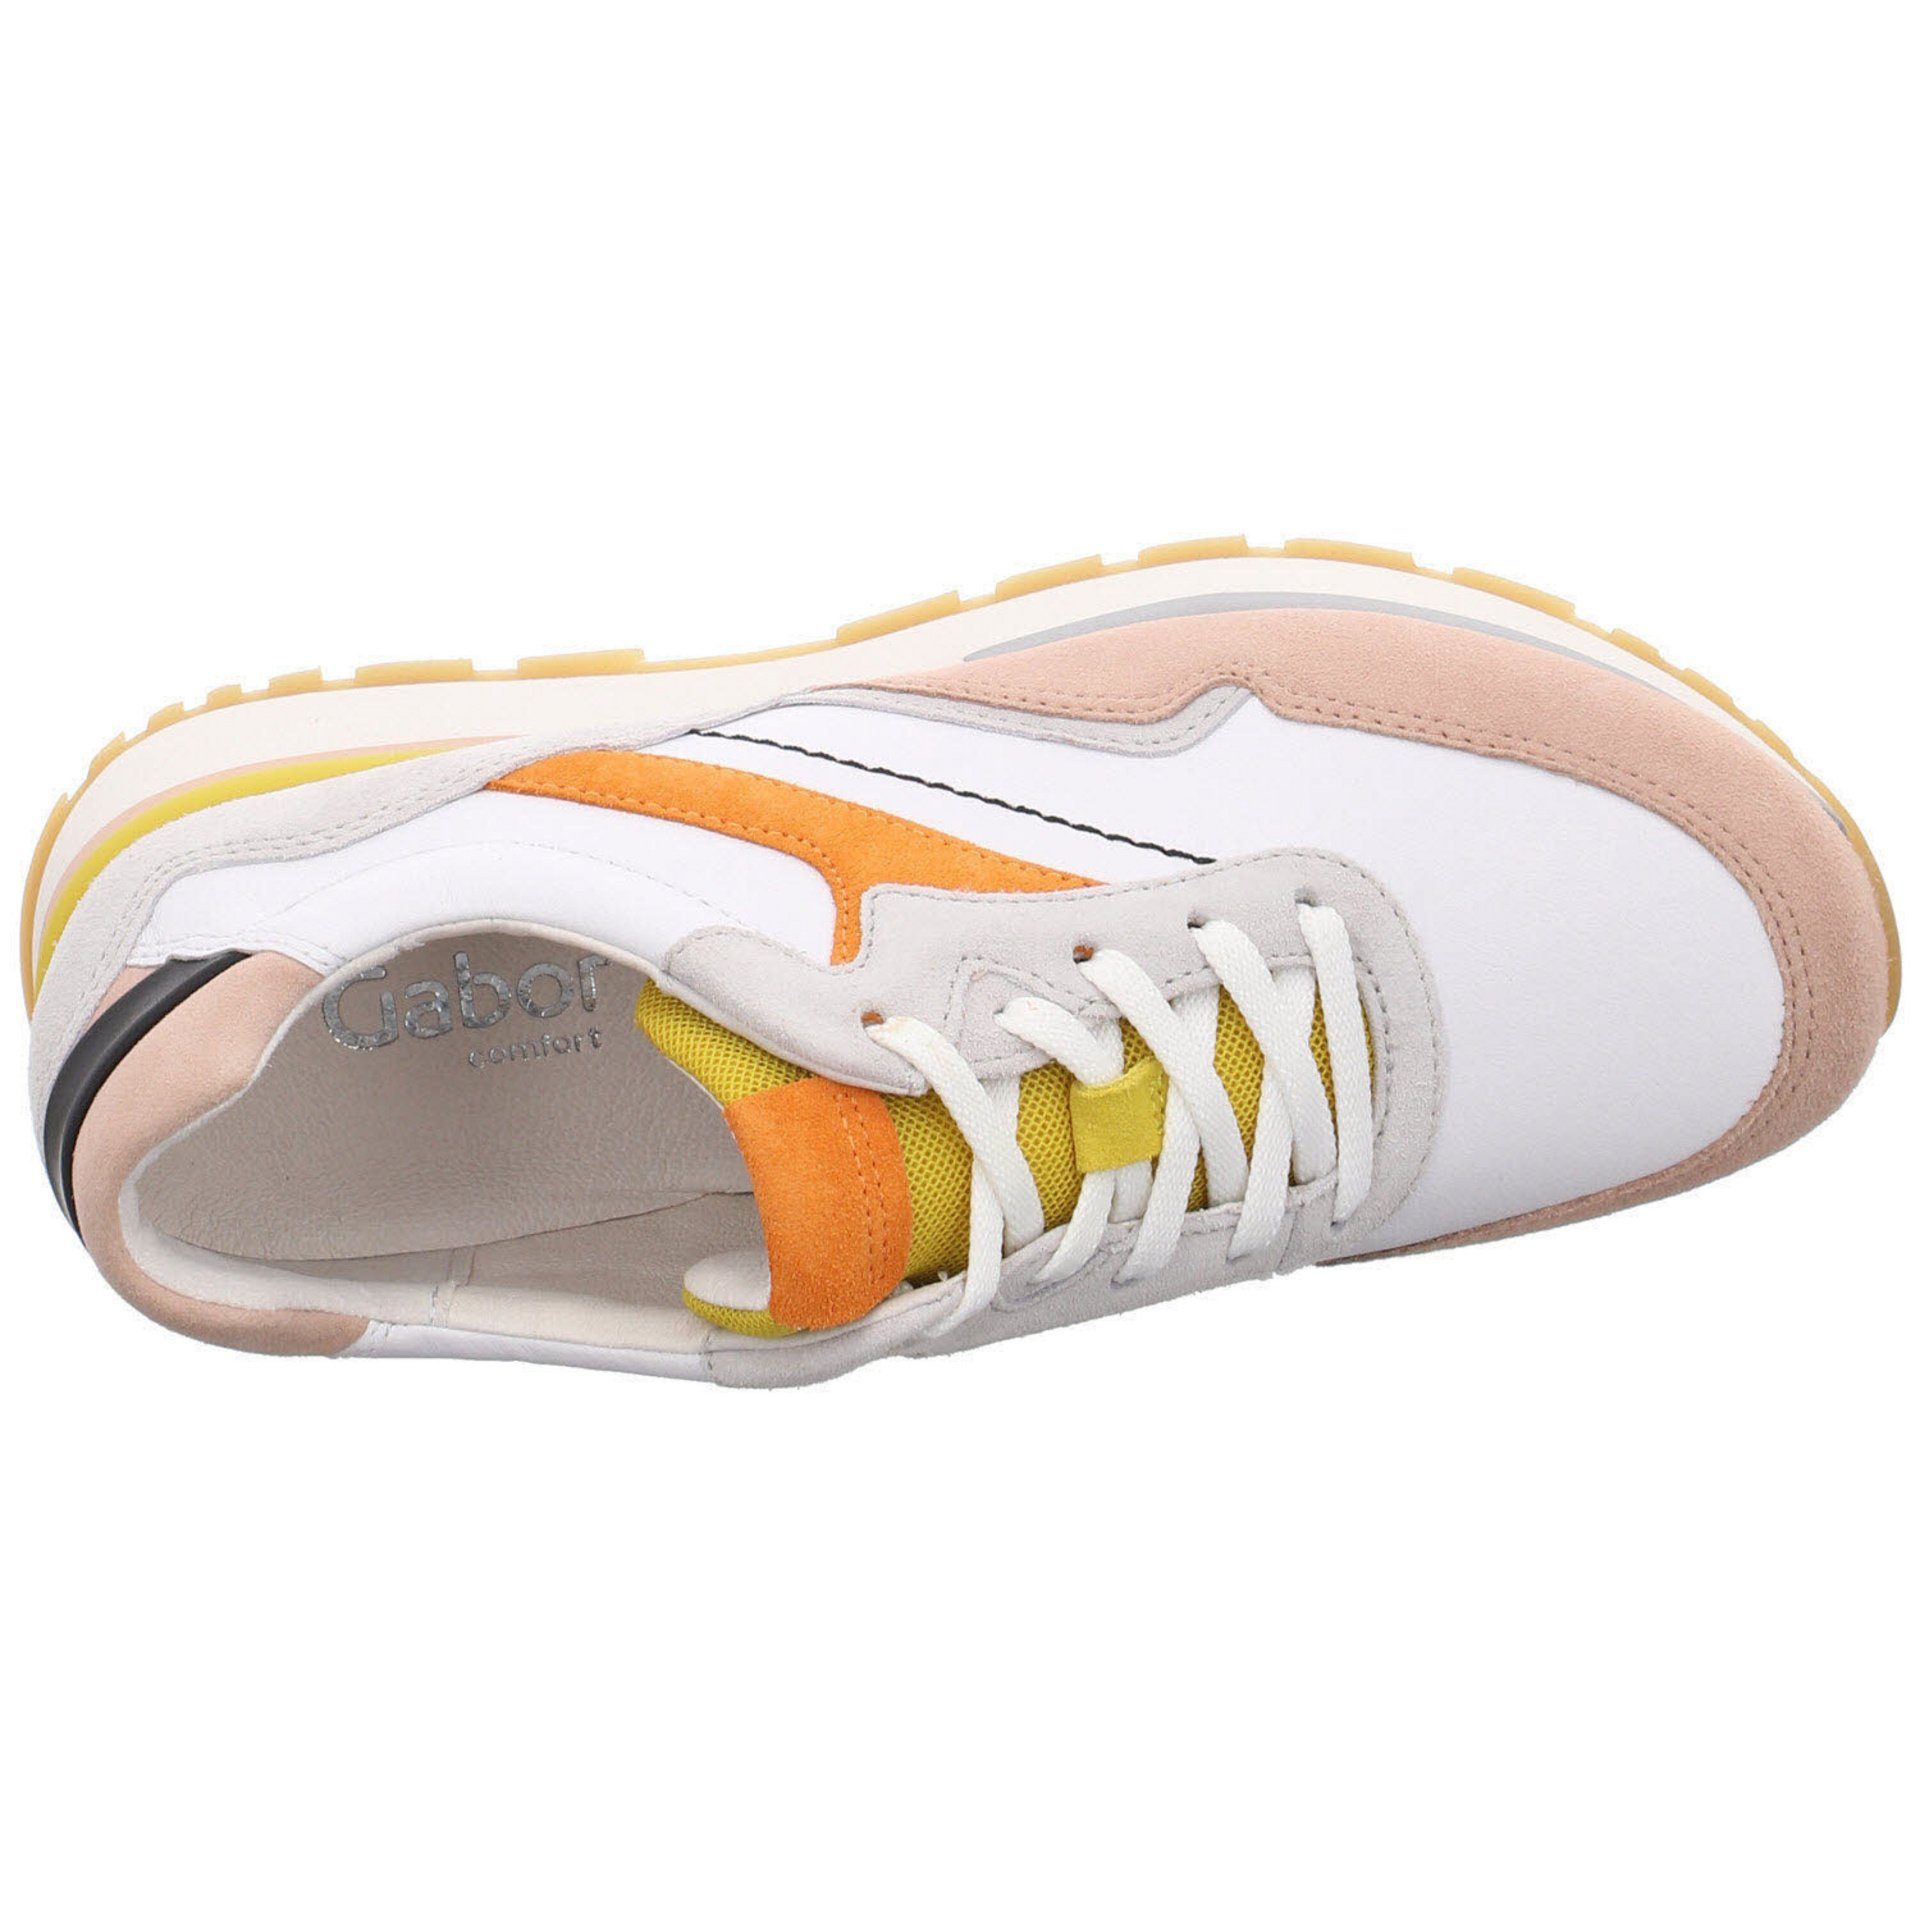 Schnürschuh Schuhe Sneaker 55 Gabor Leder-/Textilkombination York Sport Sneaker weiss/multic./ Damen Halbschuhe